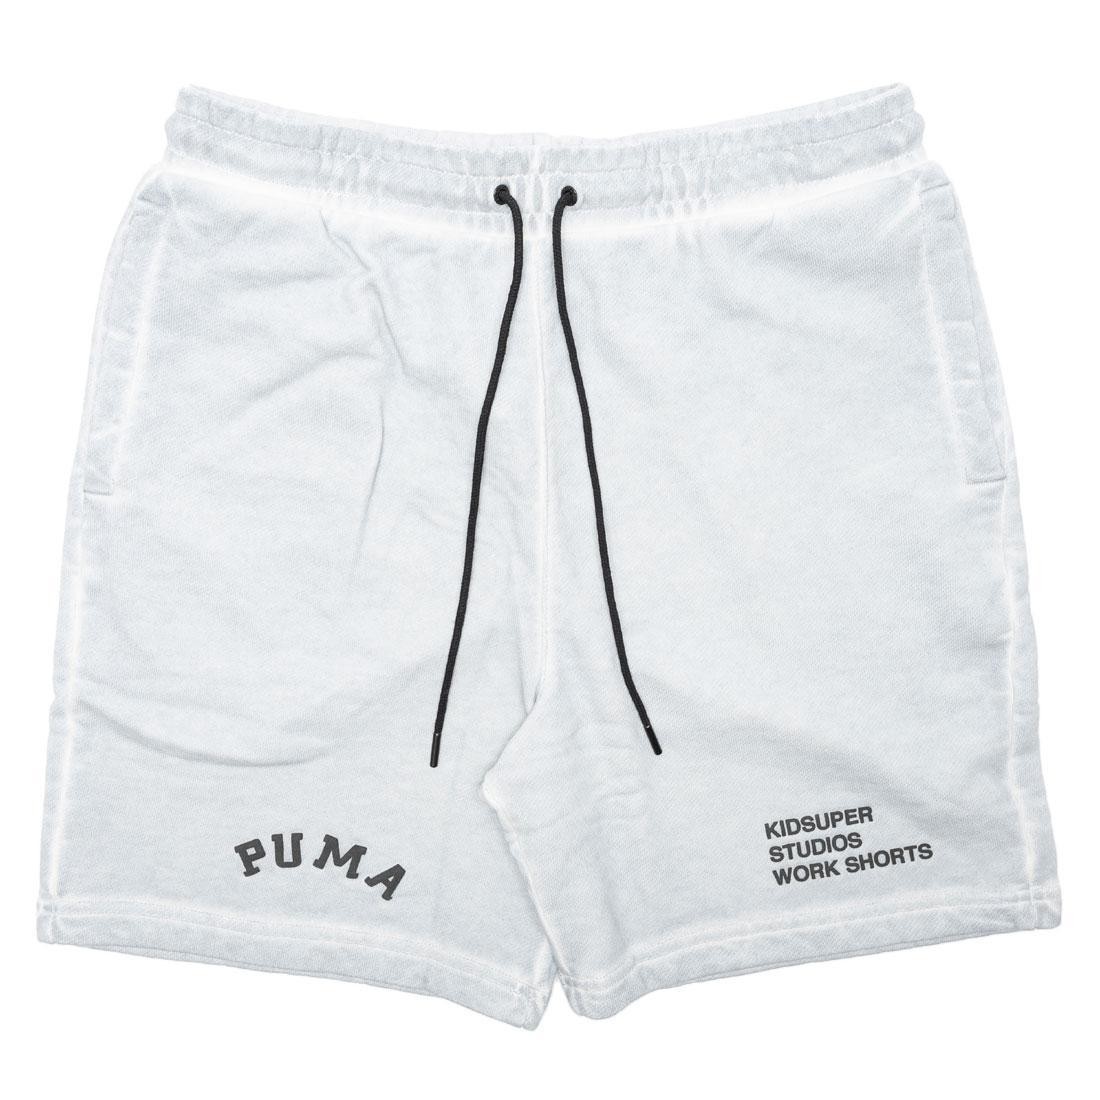 Puma x KidSuper Studios Men Treatment Shorts (gray / gray violet)